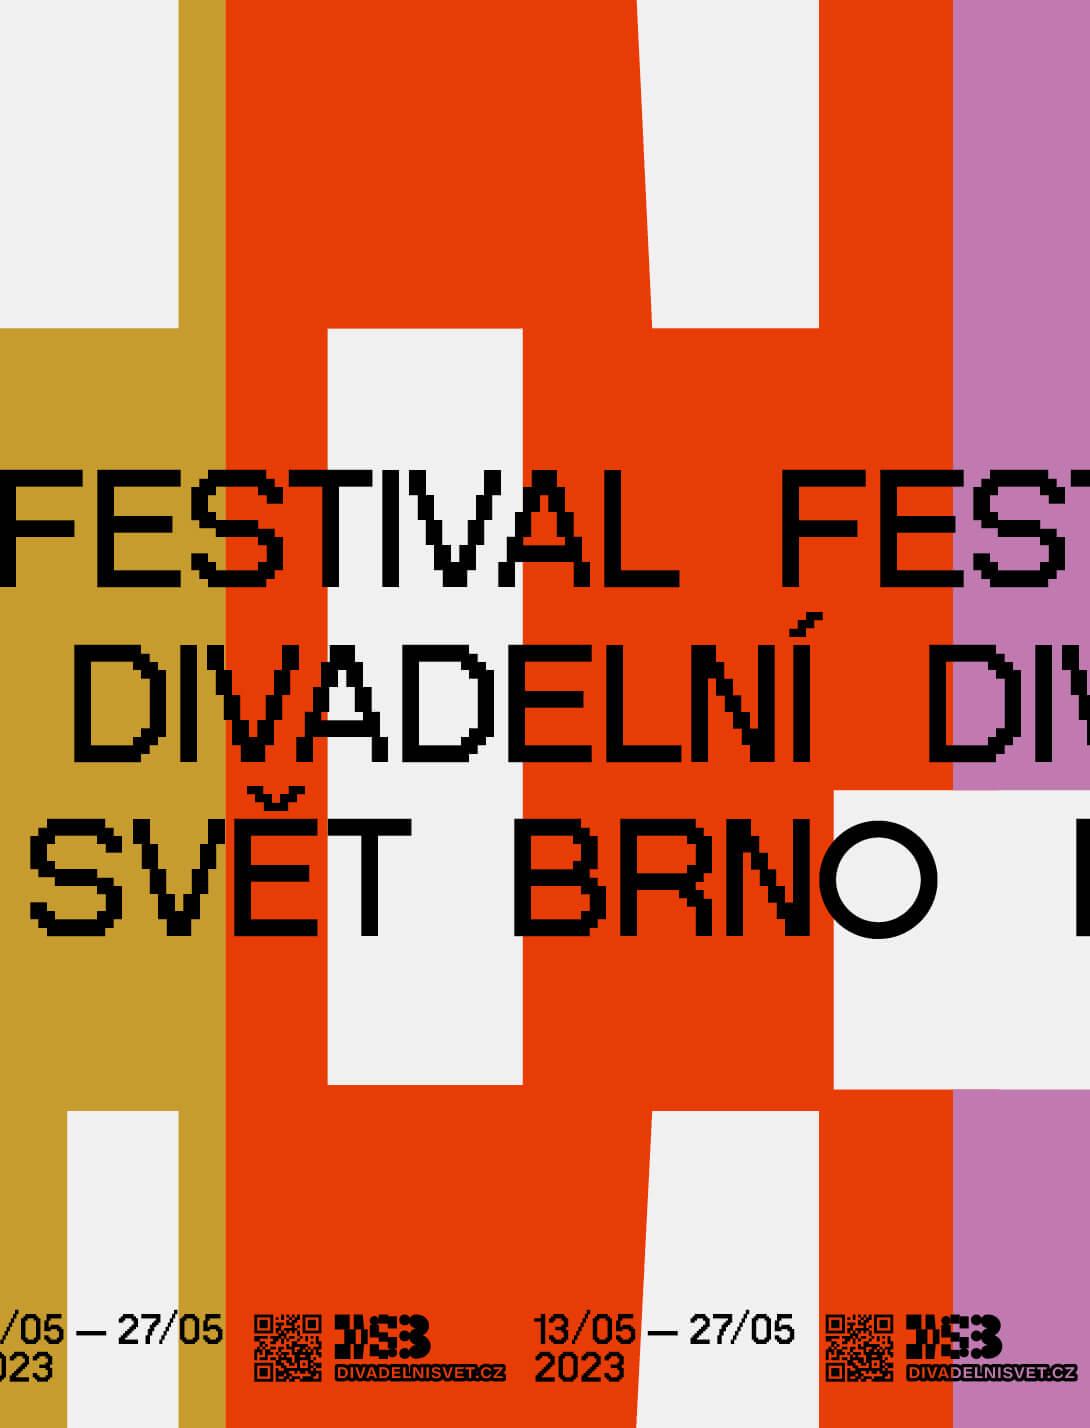 Festival Divadelní svět 2023. Magazín KULT* Brno